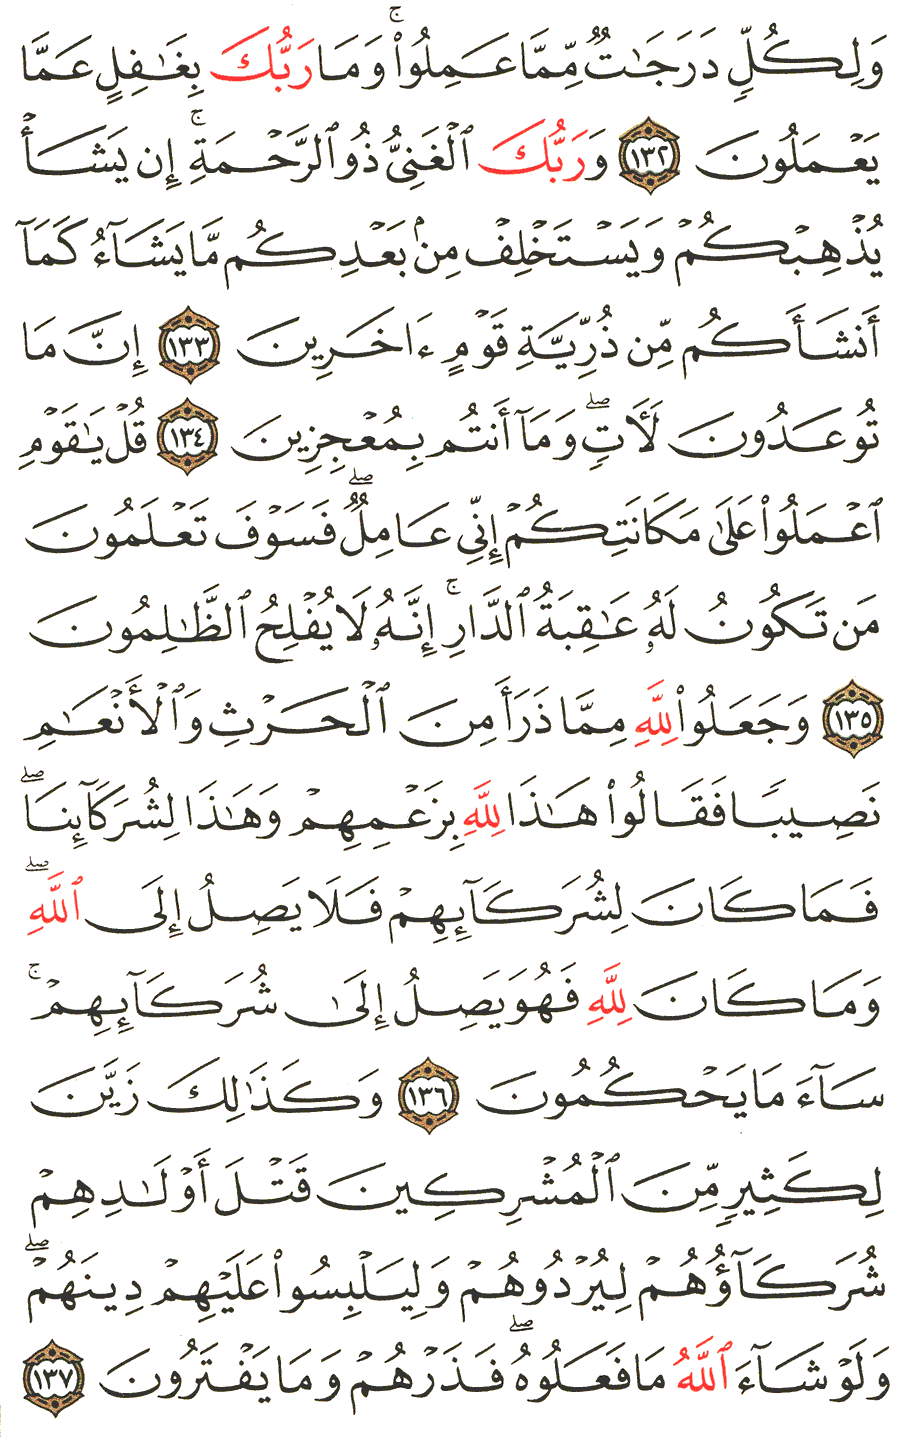 الصفحة 145 من القرآن الكريم